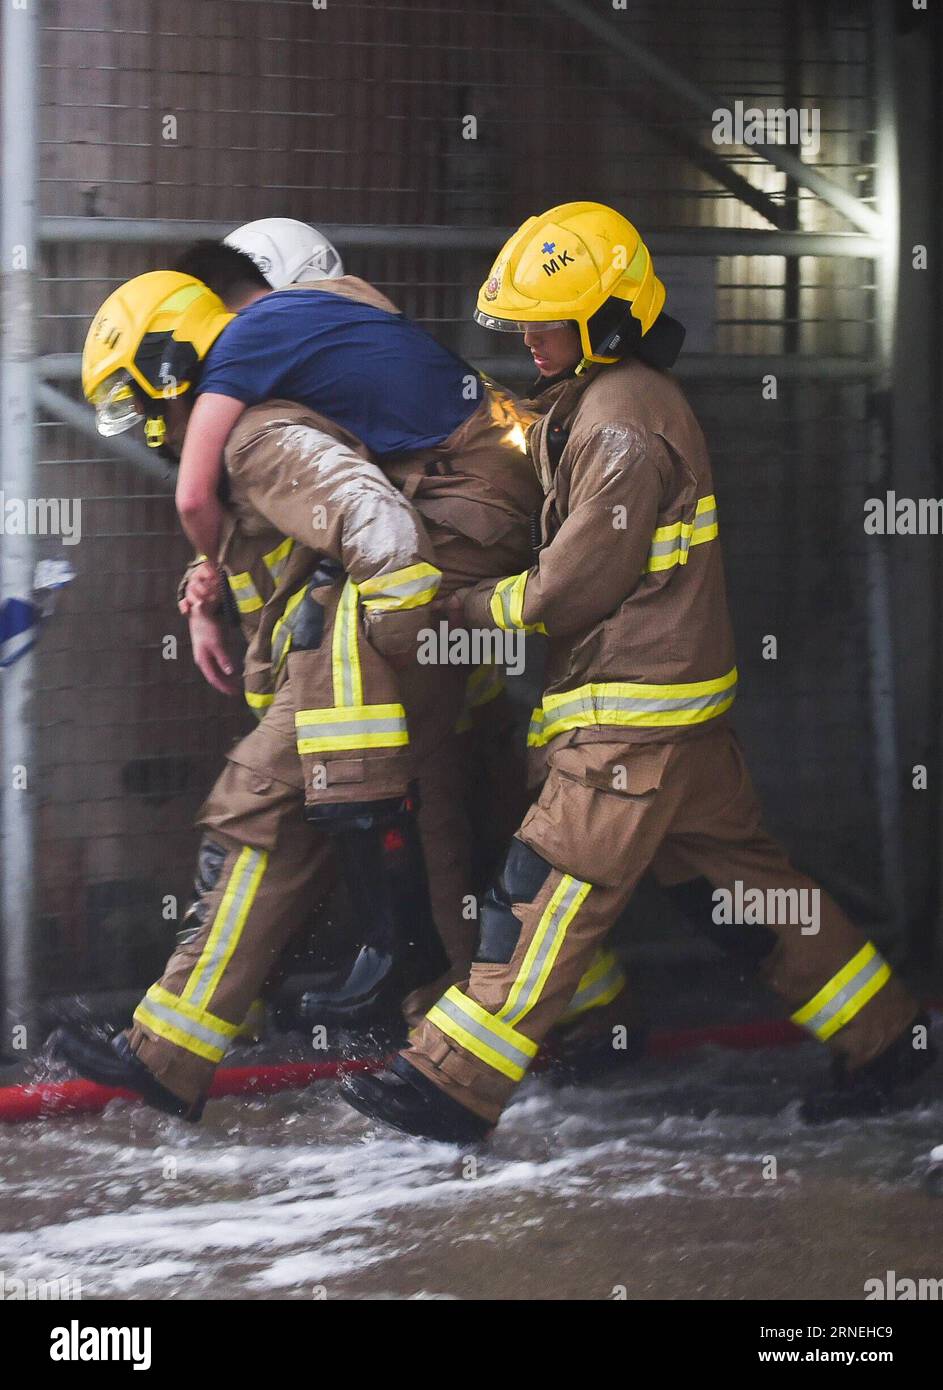 Hong Kong : marque à Industriegebäude HONG KONG, le 23 juin 2016 -- des pompiers tuent un homme blessé dans un bâtiment industriel de plusieurs étages en feu dans la région de East Kowloon à Hong Kong, dans le sud de la Chine, le 23 juin 2016. Un deuxième pompier est mort jeudi soir après avoir combattu un incendie à quatre alarmes qui a fait rage pendant plus de deux jours dans un bâtiment industriel de Kowloon Bay. (Cxy) HONG KONG-FIRE-LEASALTY (CN) NgxWingxKin PUBLICATIONxNOTxINxCHN Hong Kong Brand in Industrial buildings Hong Kong juin 23 2016 des pompiers effectuent un attentat contre un blessé DANS un bâtiment industriel de plusieurs étages en feu à l'est Banque D'Images